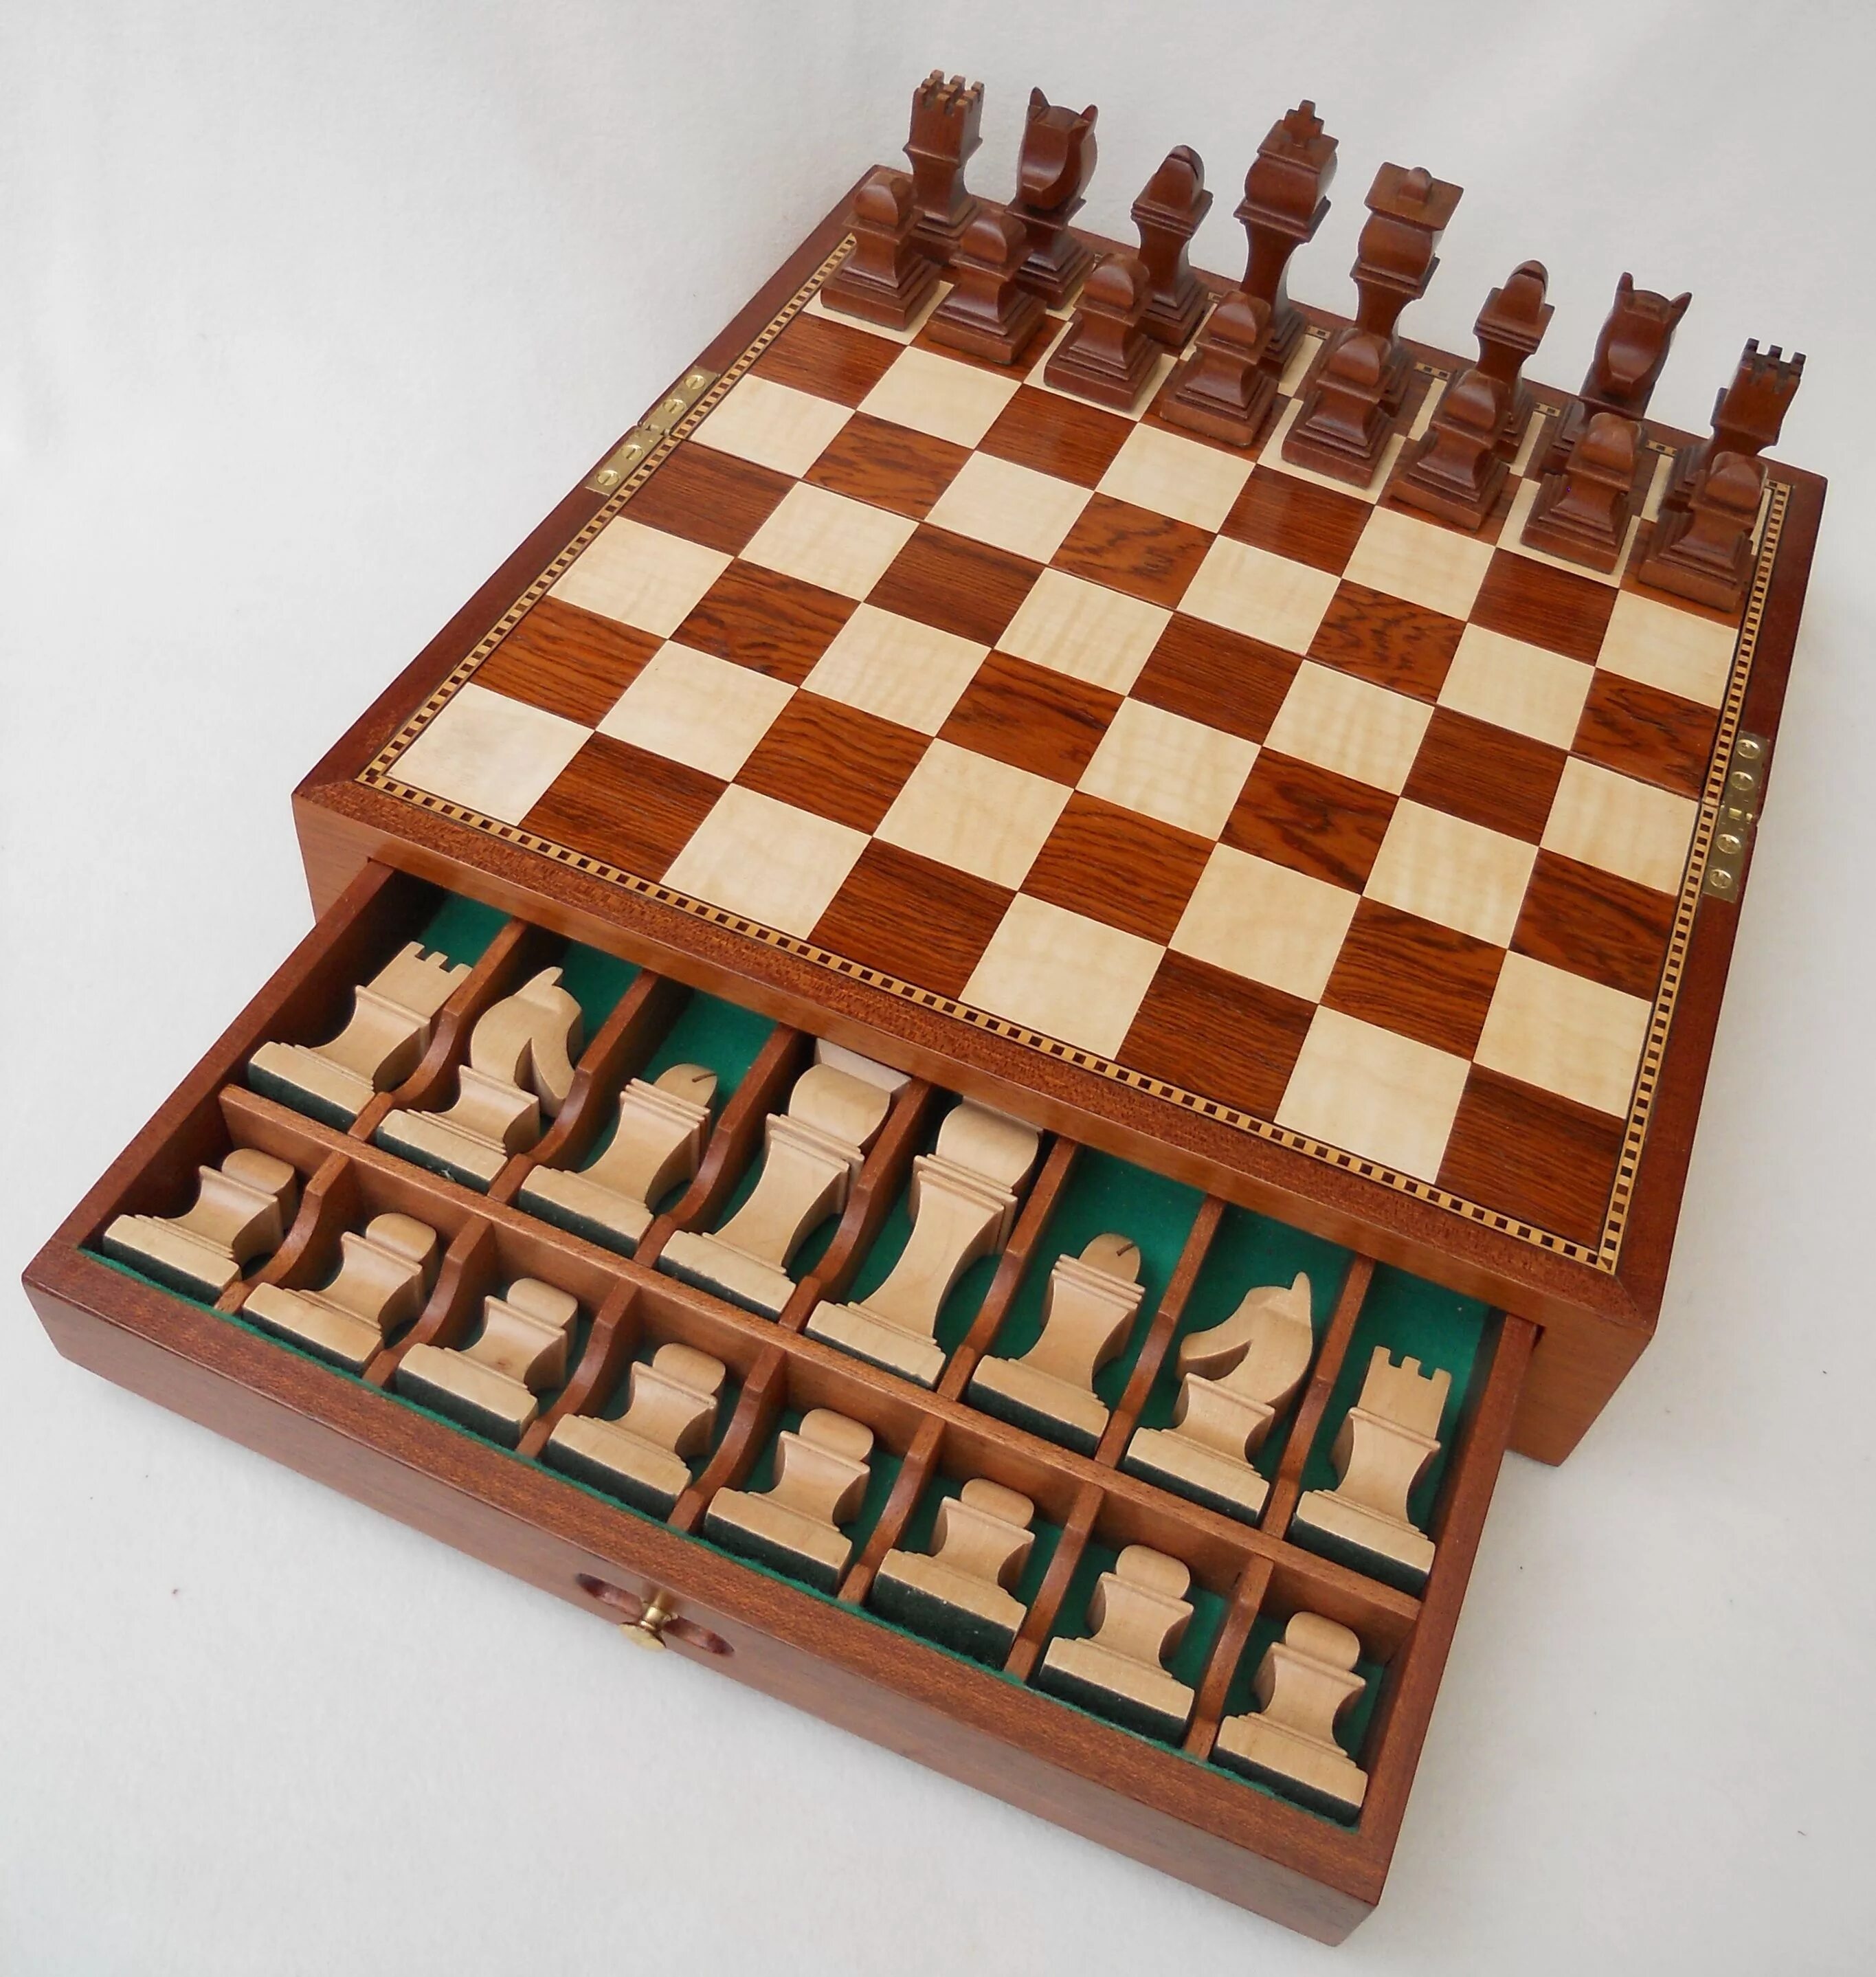 Создание шахматной доски. Шахматная доска. Шахматная доска из дерева. Шахматная дама из дерева. Шахматы из фанеры.